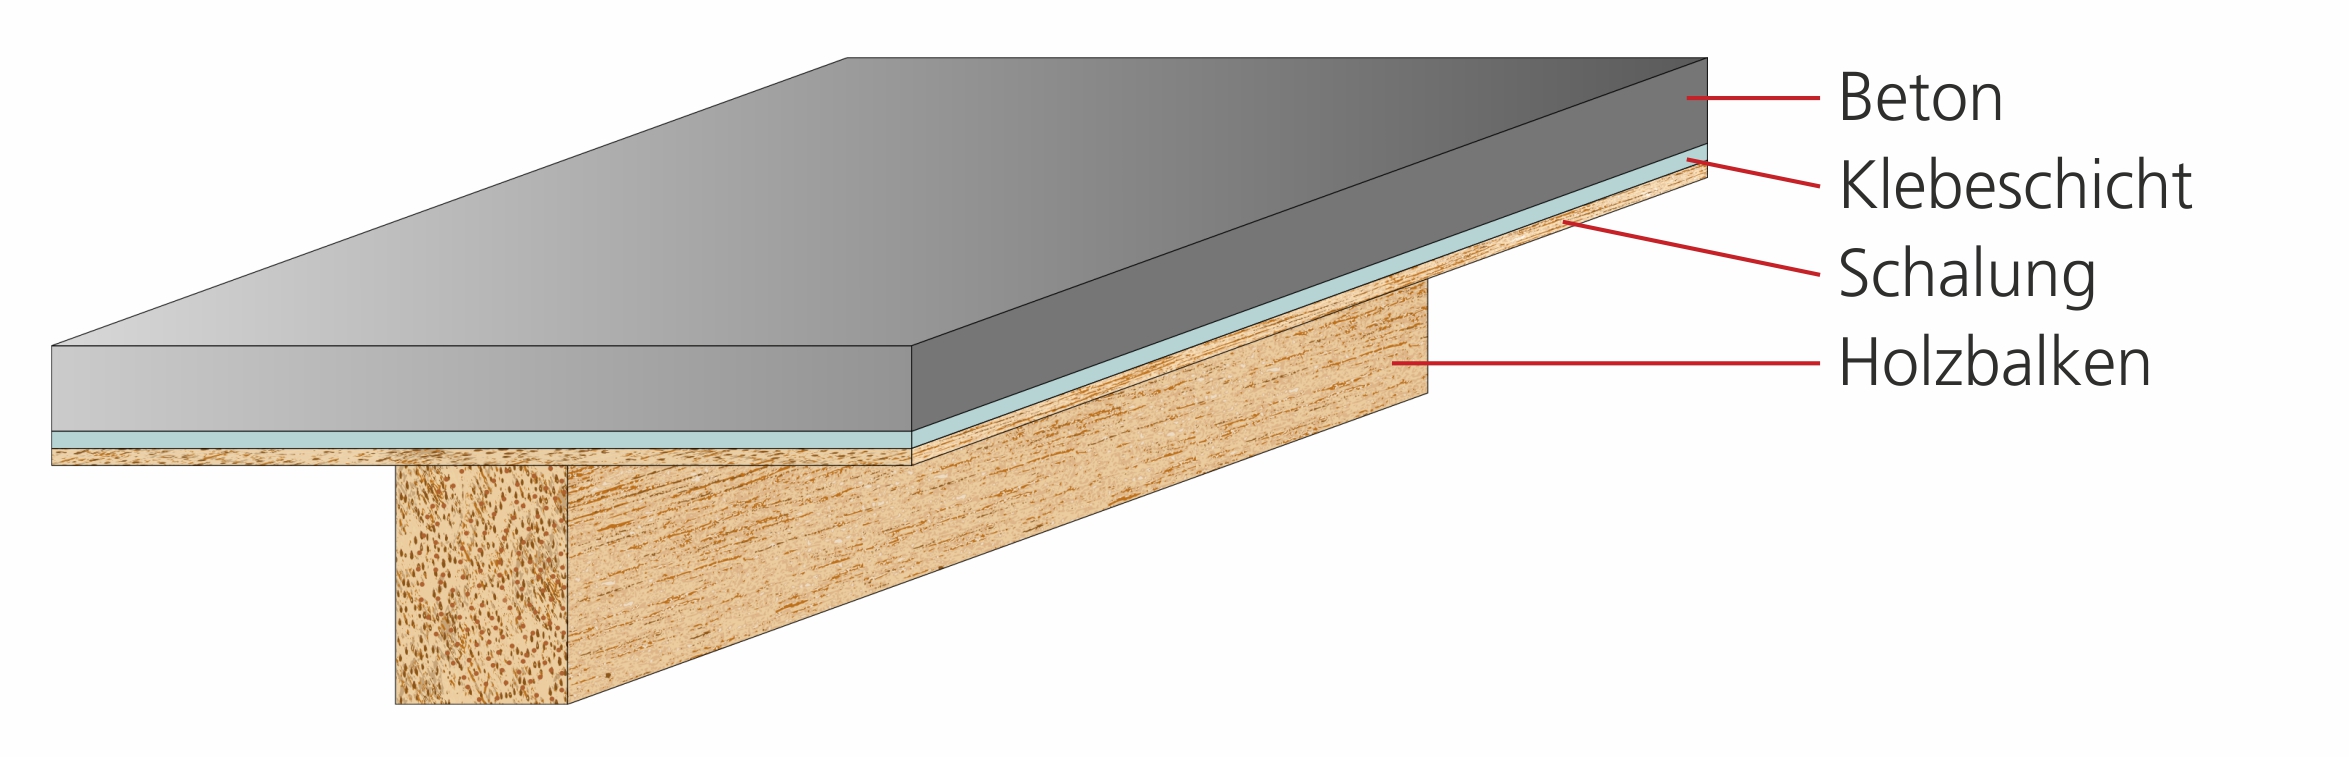 Die Computergrafik zeigt einen Holzbalken. Auf der Oberseite des Balkens liegt eine Platte, die sich aus drei Schichten zusammensetzt (von unten nach oben): Holzschalung, Klebschicht, Beton.